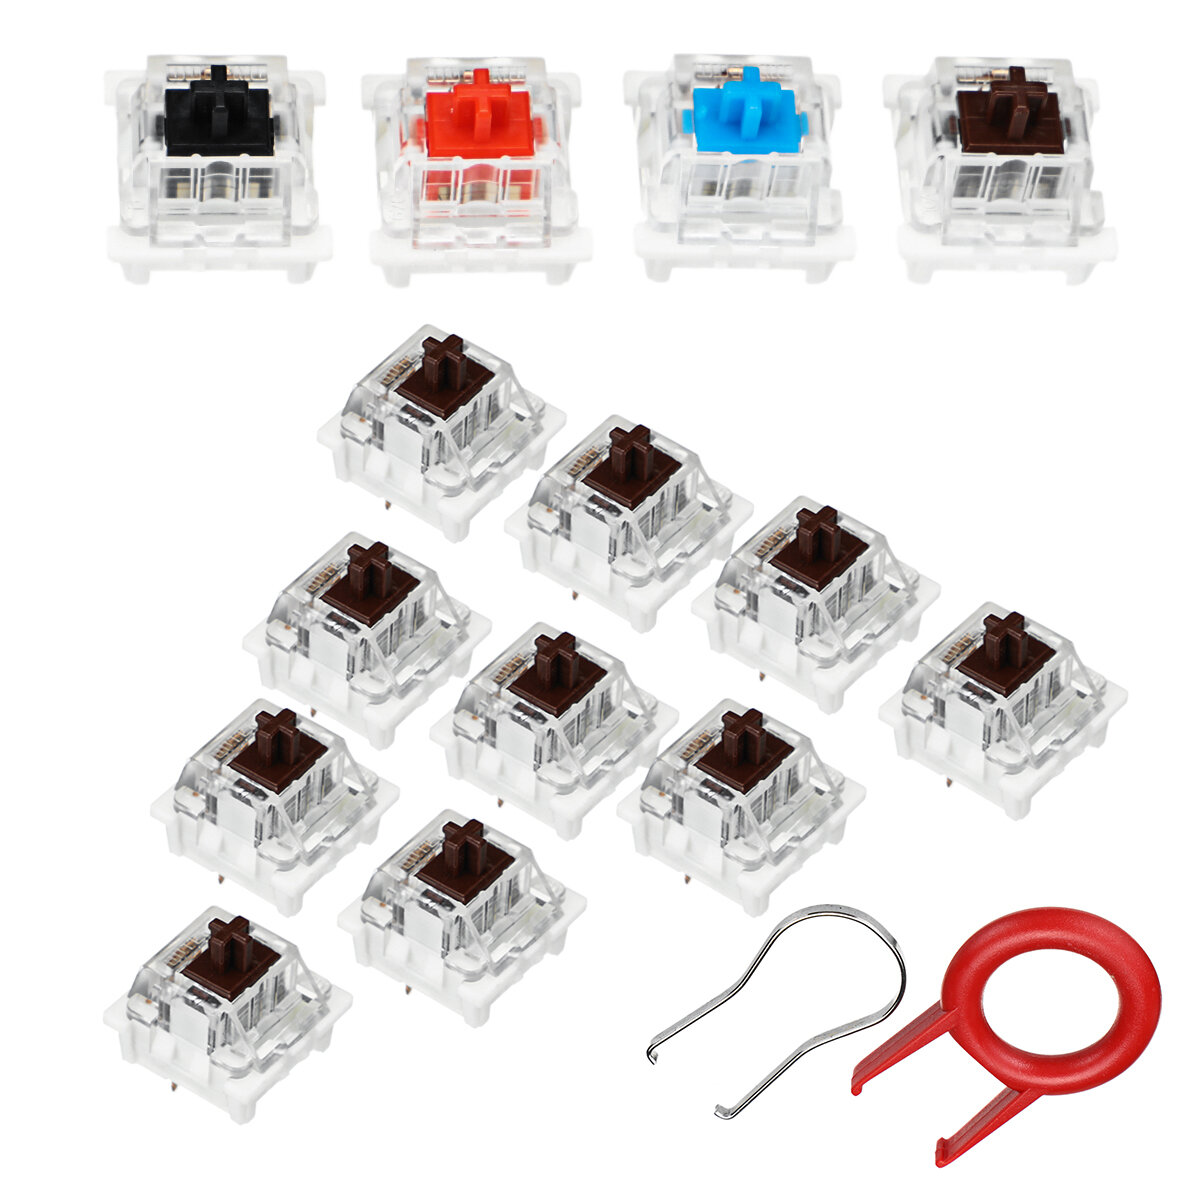 

10 шт. Механический переключатели 3Pin Gateron RGB коричневый / черный / красный / синий переключатель с съемником клави